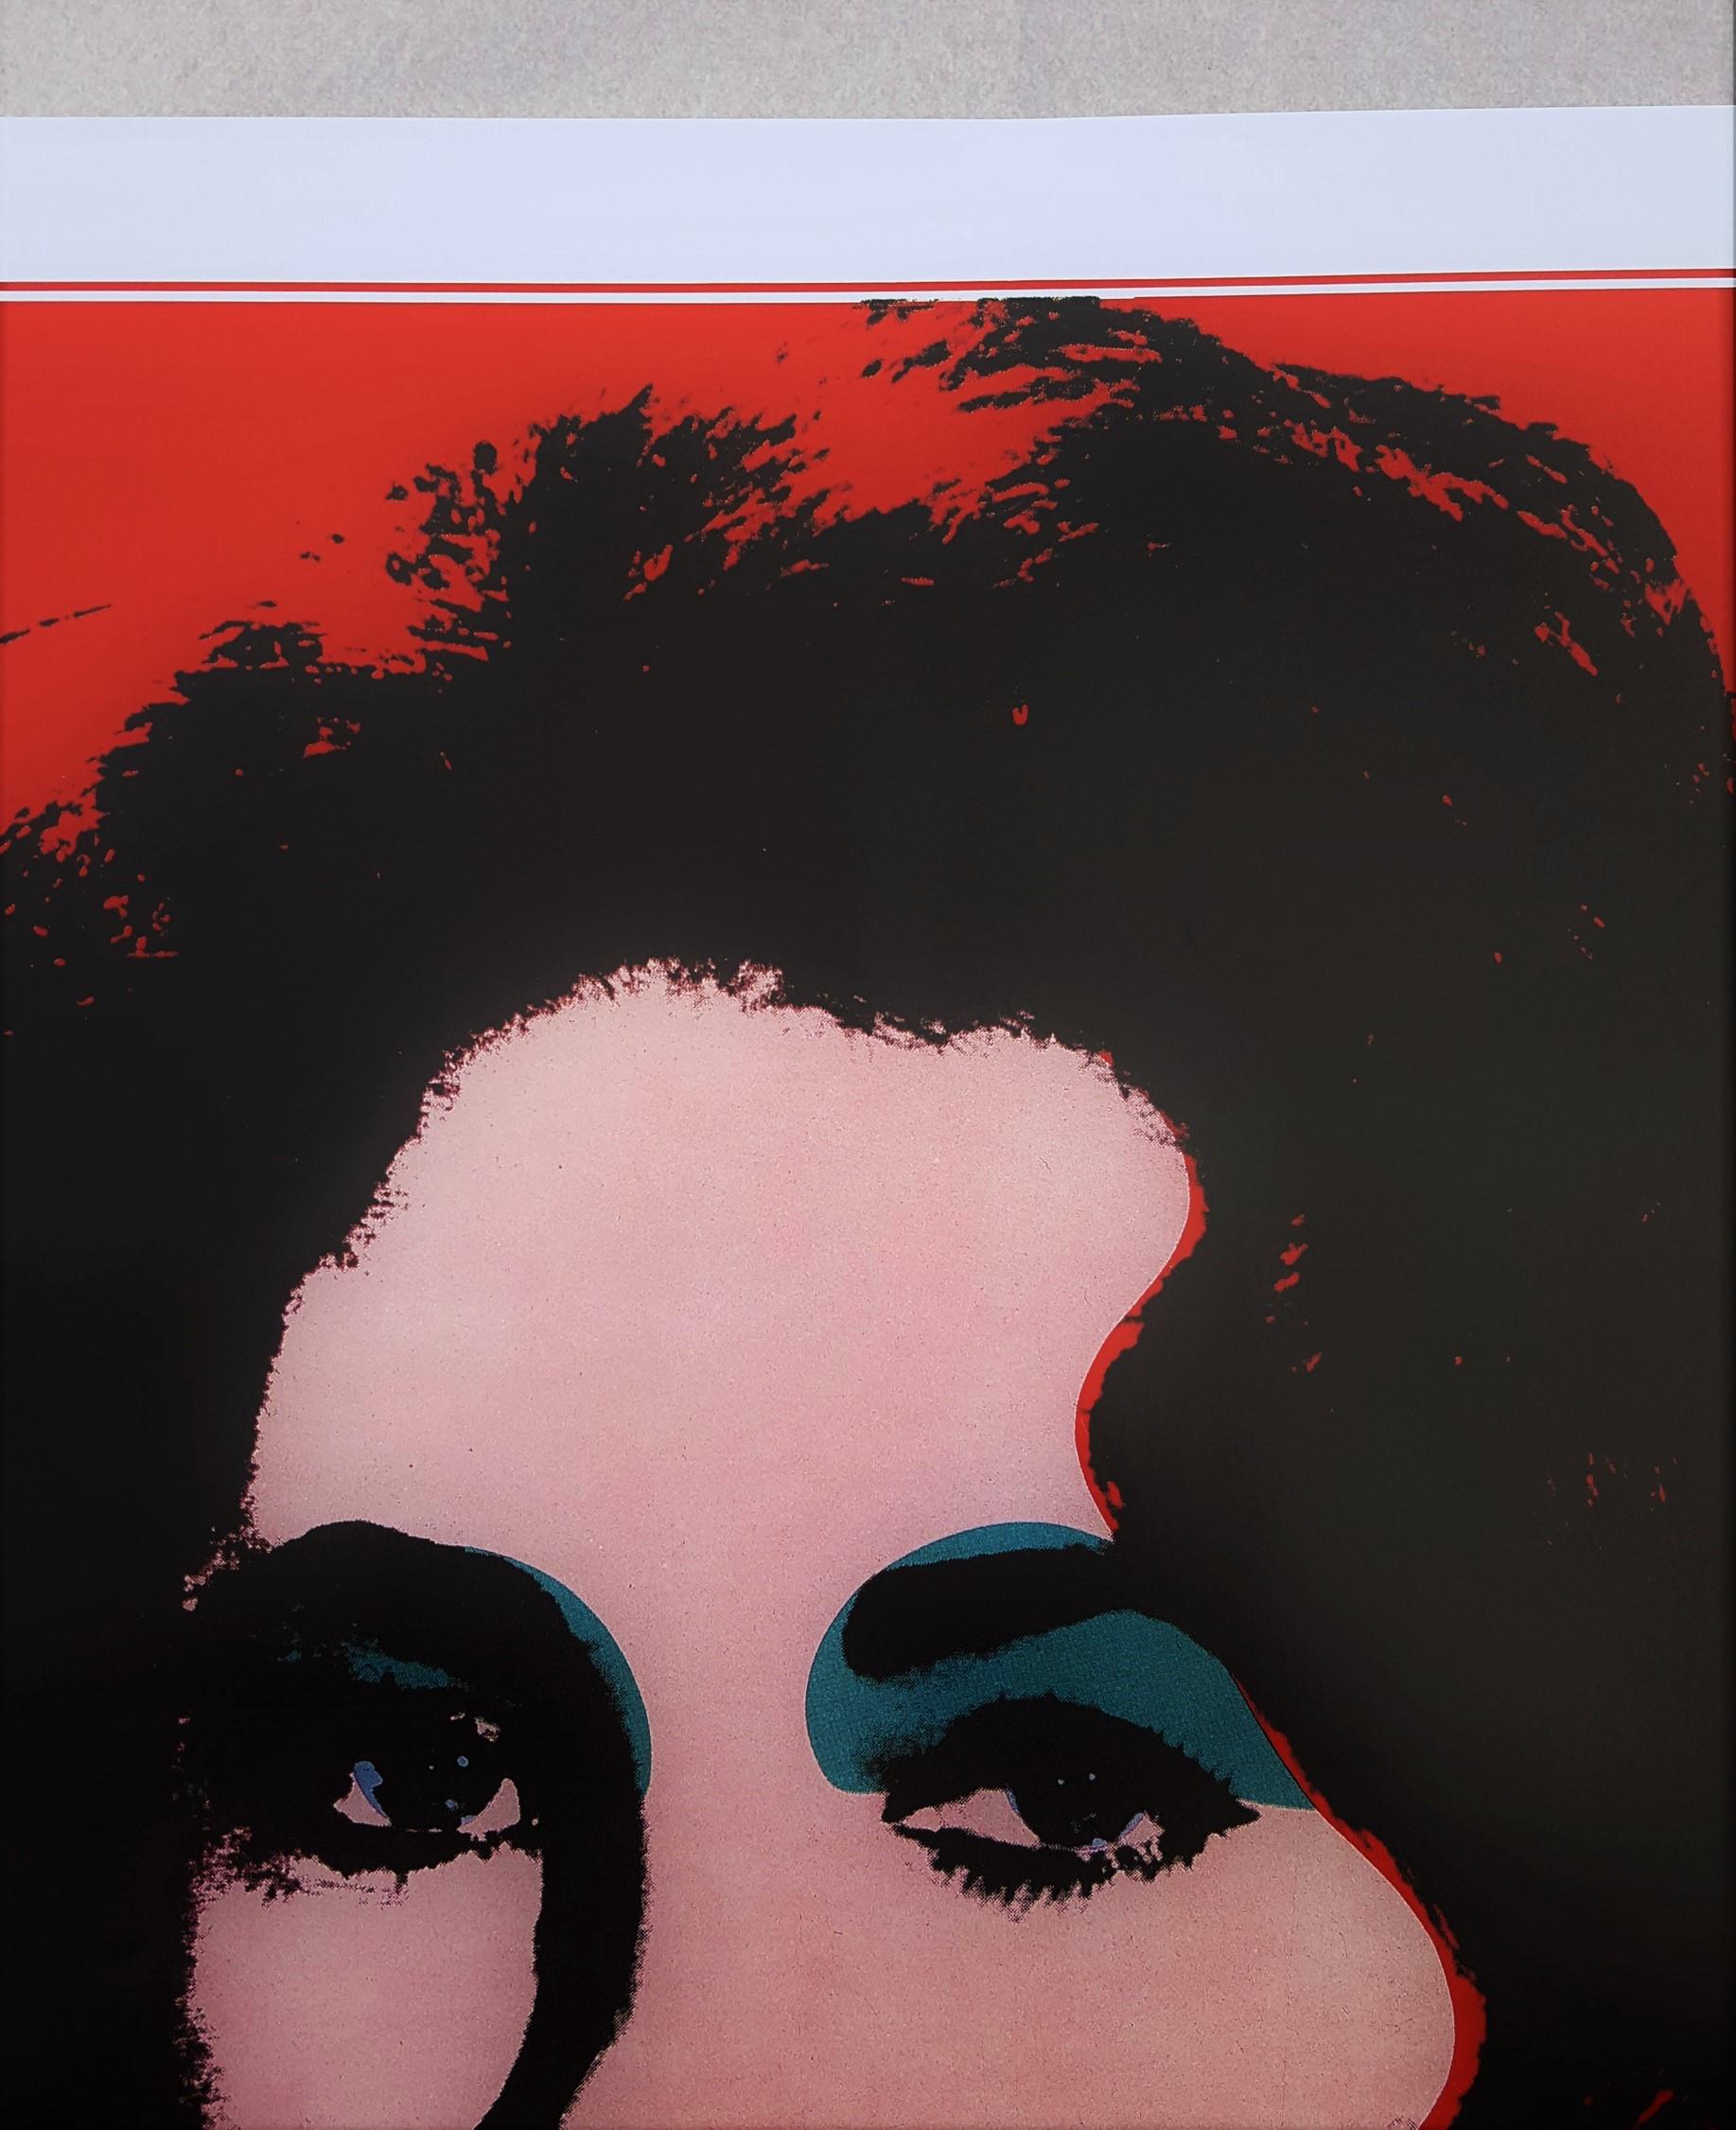 Andy Warhol at Castel Mareccio (Liz Taylor) - Gray Portrait Print by (after) Andy Warhol